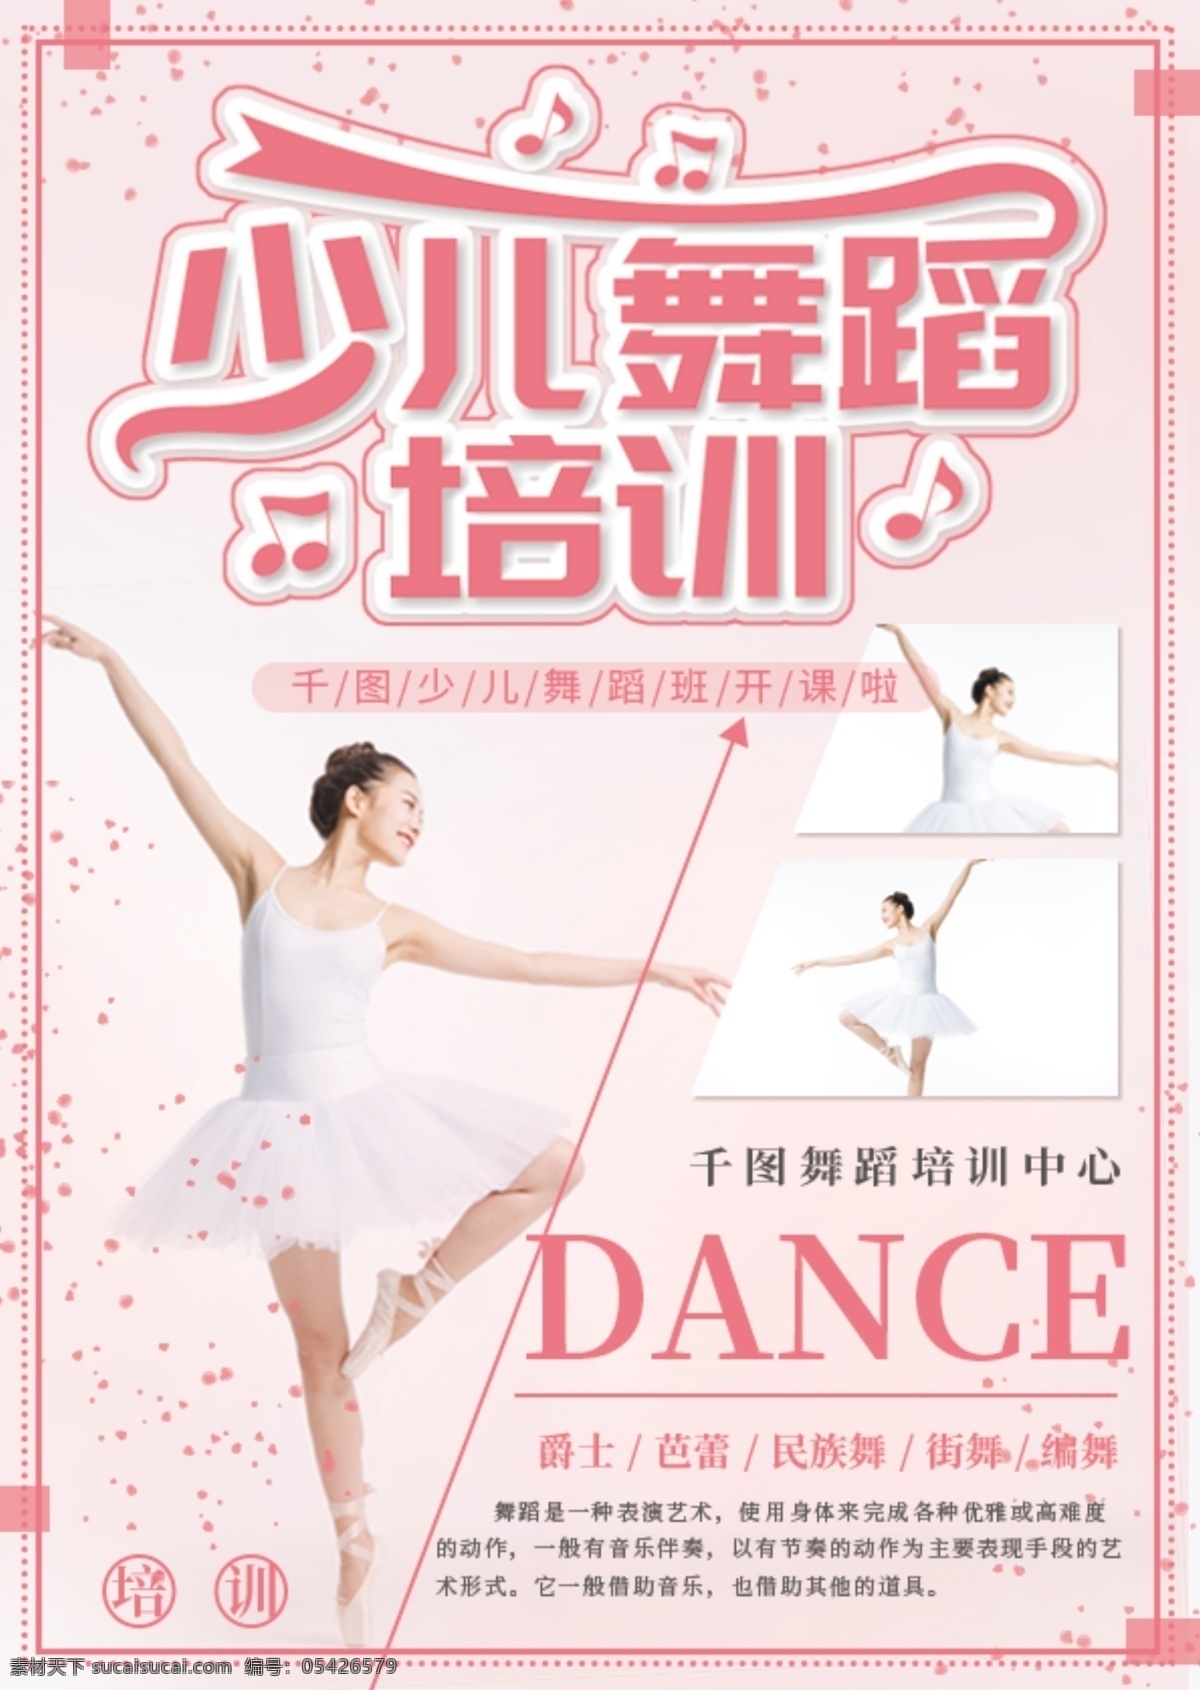 简约 风 粉色 少儿 舞蹈 宣传单 简约风 少儿舞蹈 培训 爵士 芭蕾 儿童 单页宣传单 儿童舞蹈